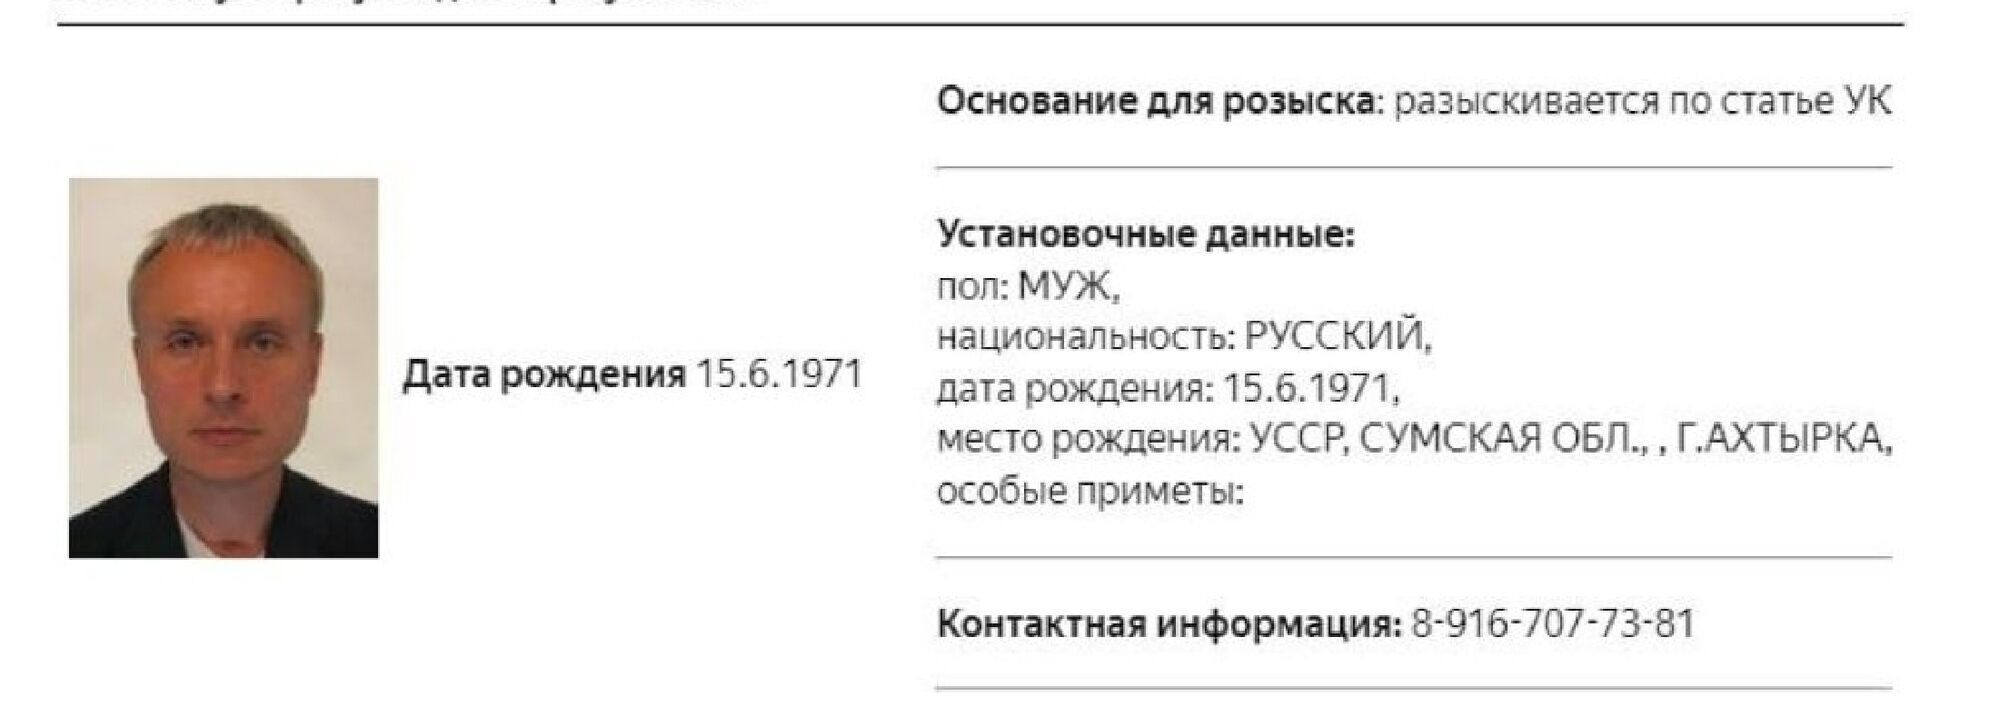 Росія оголосила у розшук віцепрезидента "Газпромбанку", який пішов воювати за Україну: подробиці